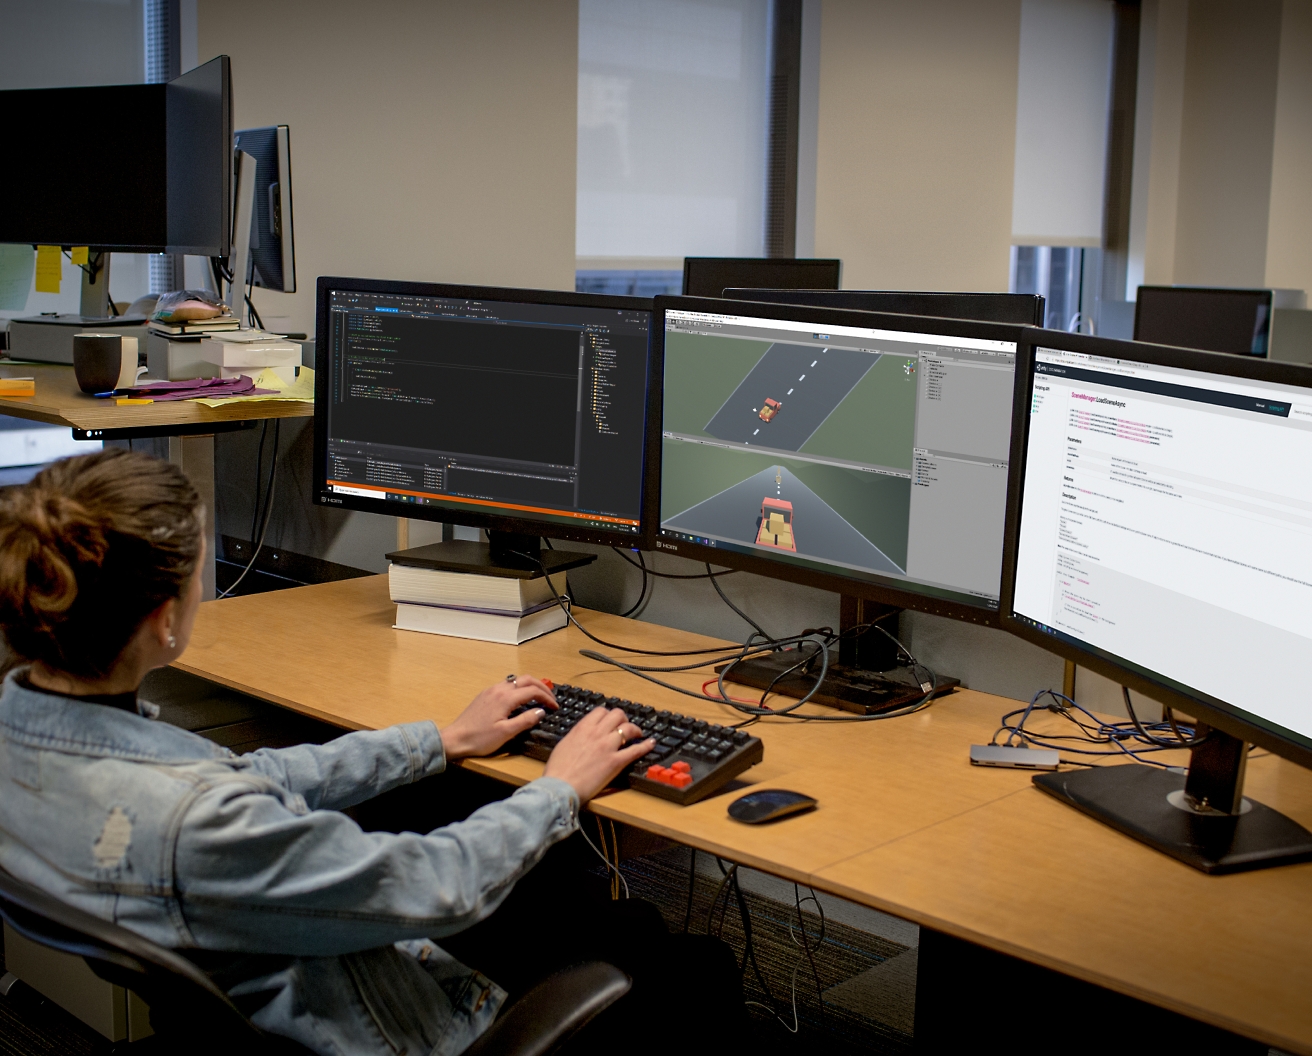 Softwarová vývojářka pracuje v kanceláři na více monitorech, kóduje a ladí software.